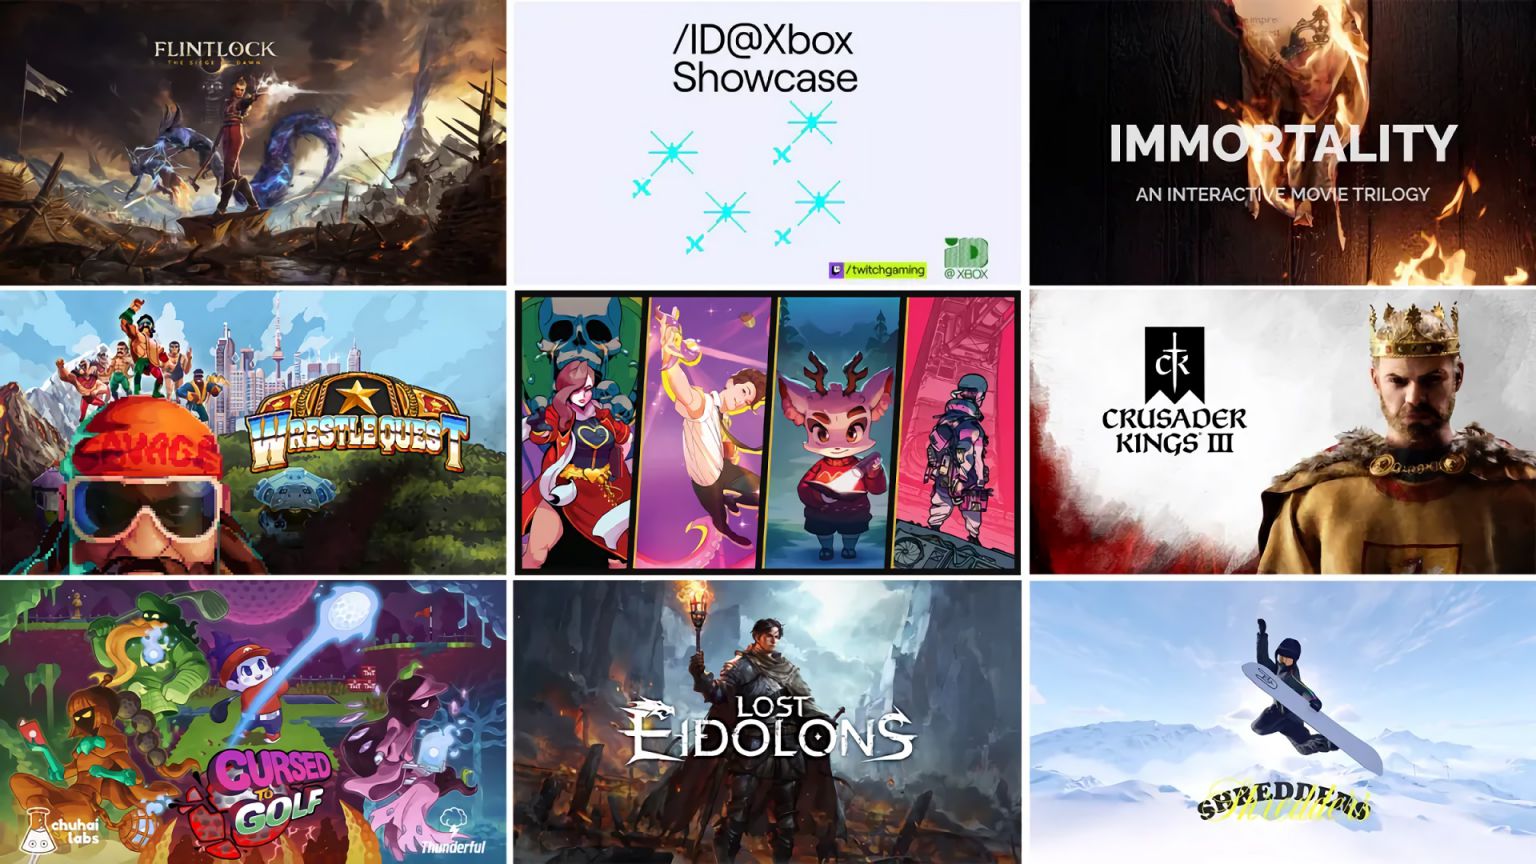 Si quieres saber cuáles han sido los nuevos 11 juegos que Microsoft ha anunciado el ID@Xbox Showcase y que llegan a Game Pass, echa un vistazo.